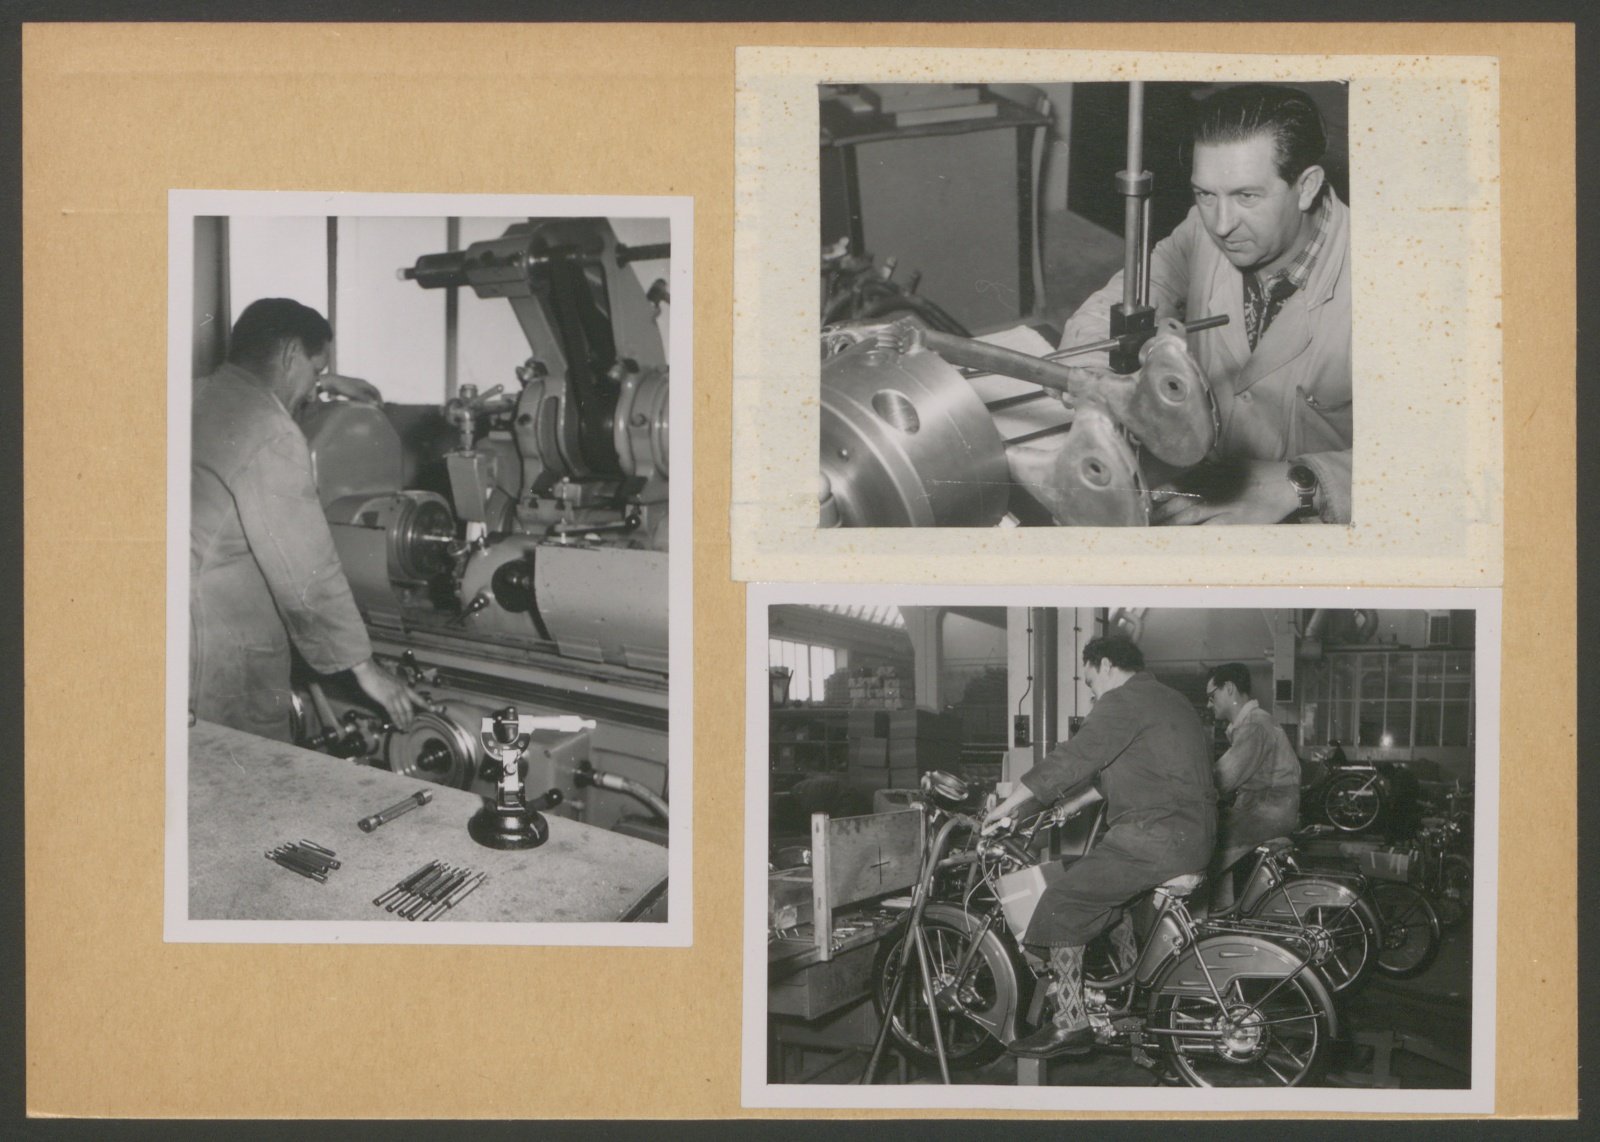 Fotografie: Innenansicht einer Werkshalle, Arbeiter bei der Fertigung, mehrere Motive (Stiftung Deutsches Technikmuseum Berlin CC0)